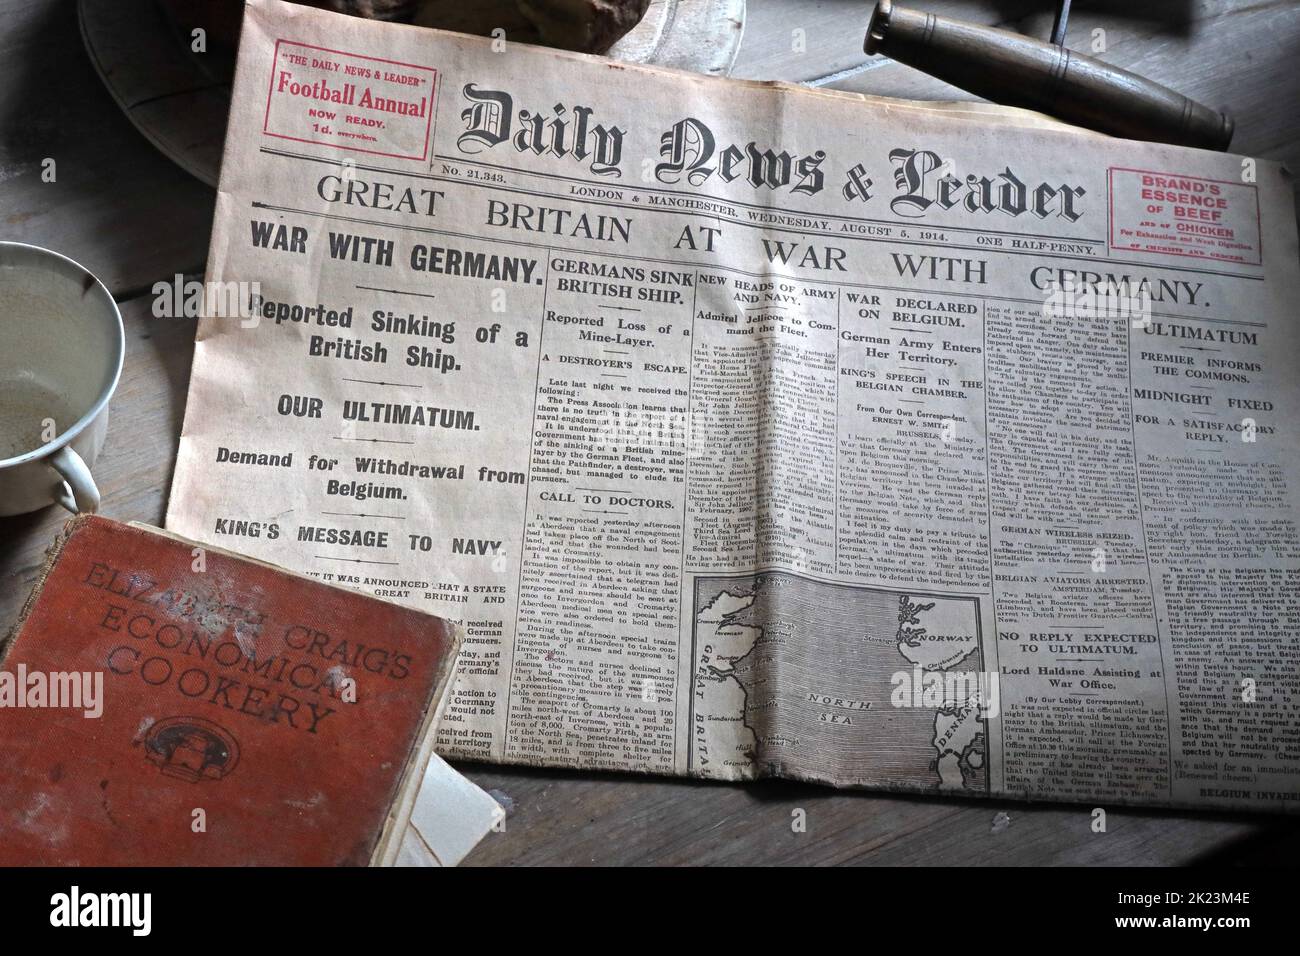 Daily News and Leader, titular de 1914,Gran Bretaña en guerra con Alemania, sobre una mesa de cocina Foto de stock